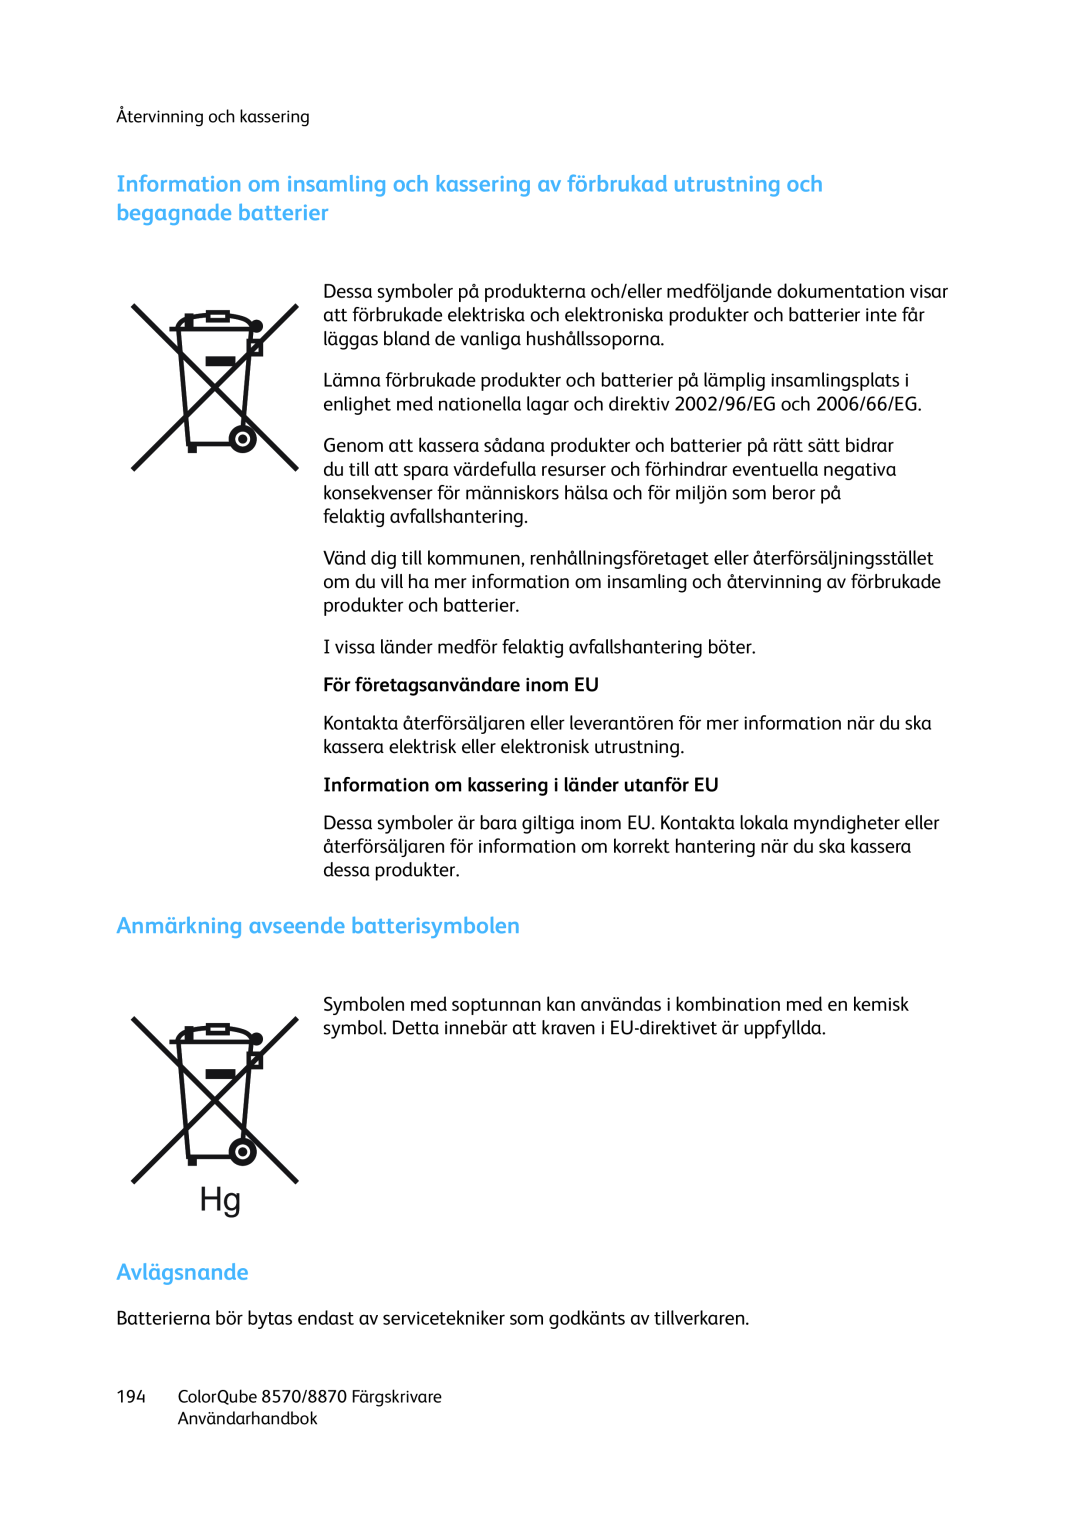 Xerox 8570 / 8870 manual Anmärkning avseende batterisymbolen, Avlägsnande, För företagsanvändare inom EU 